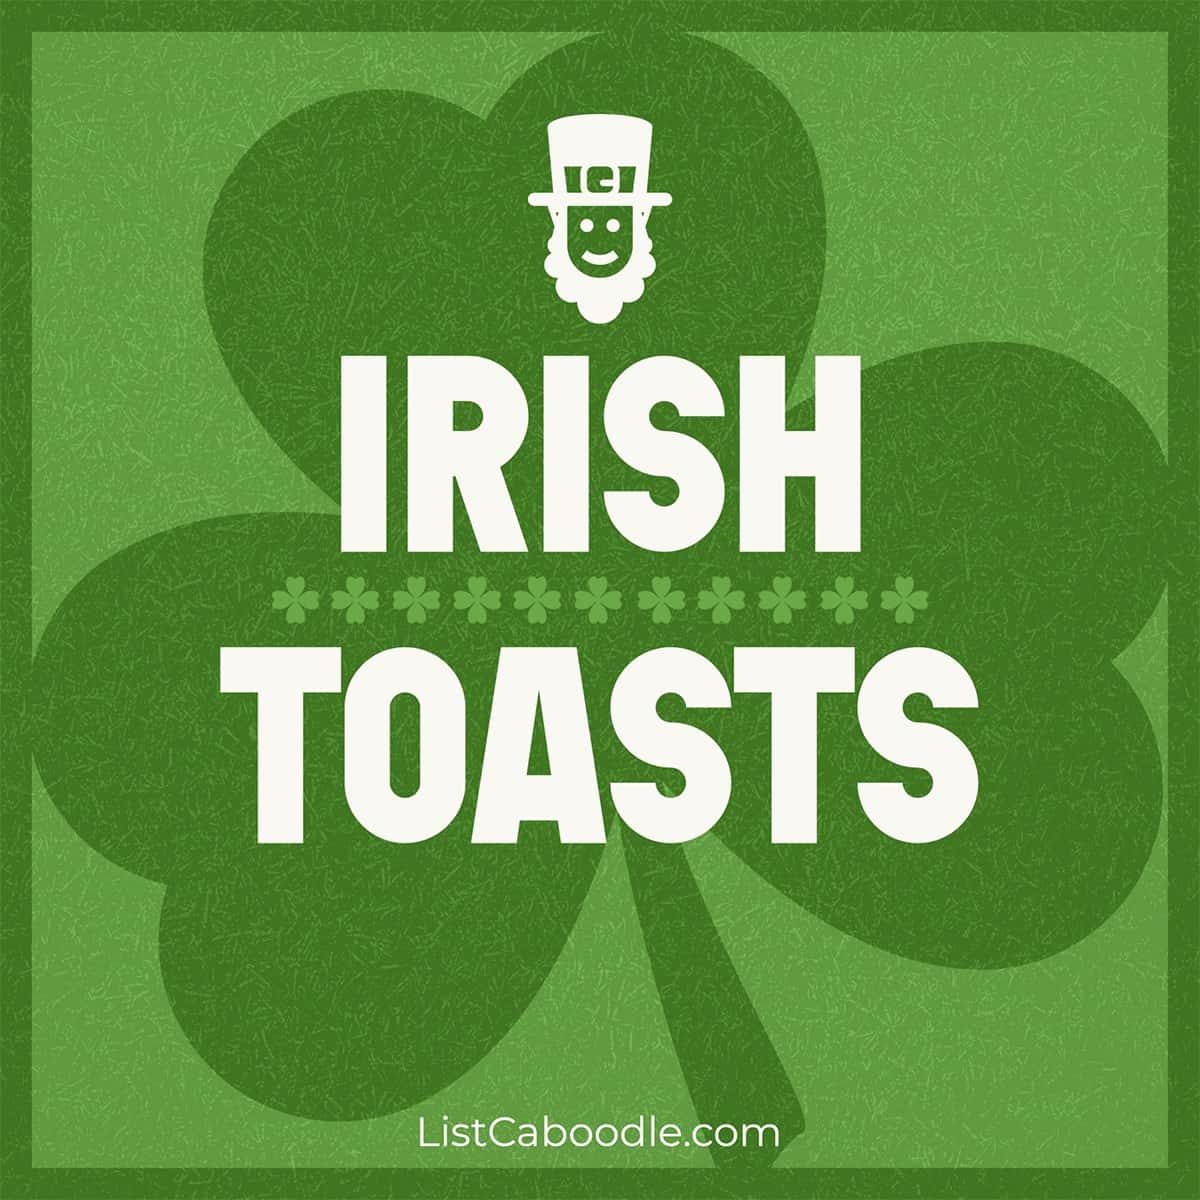 Irish toasts